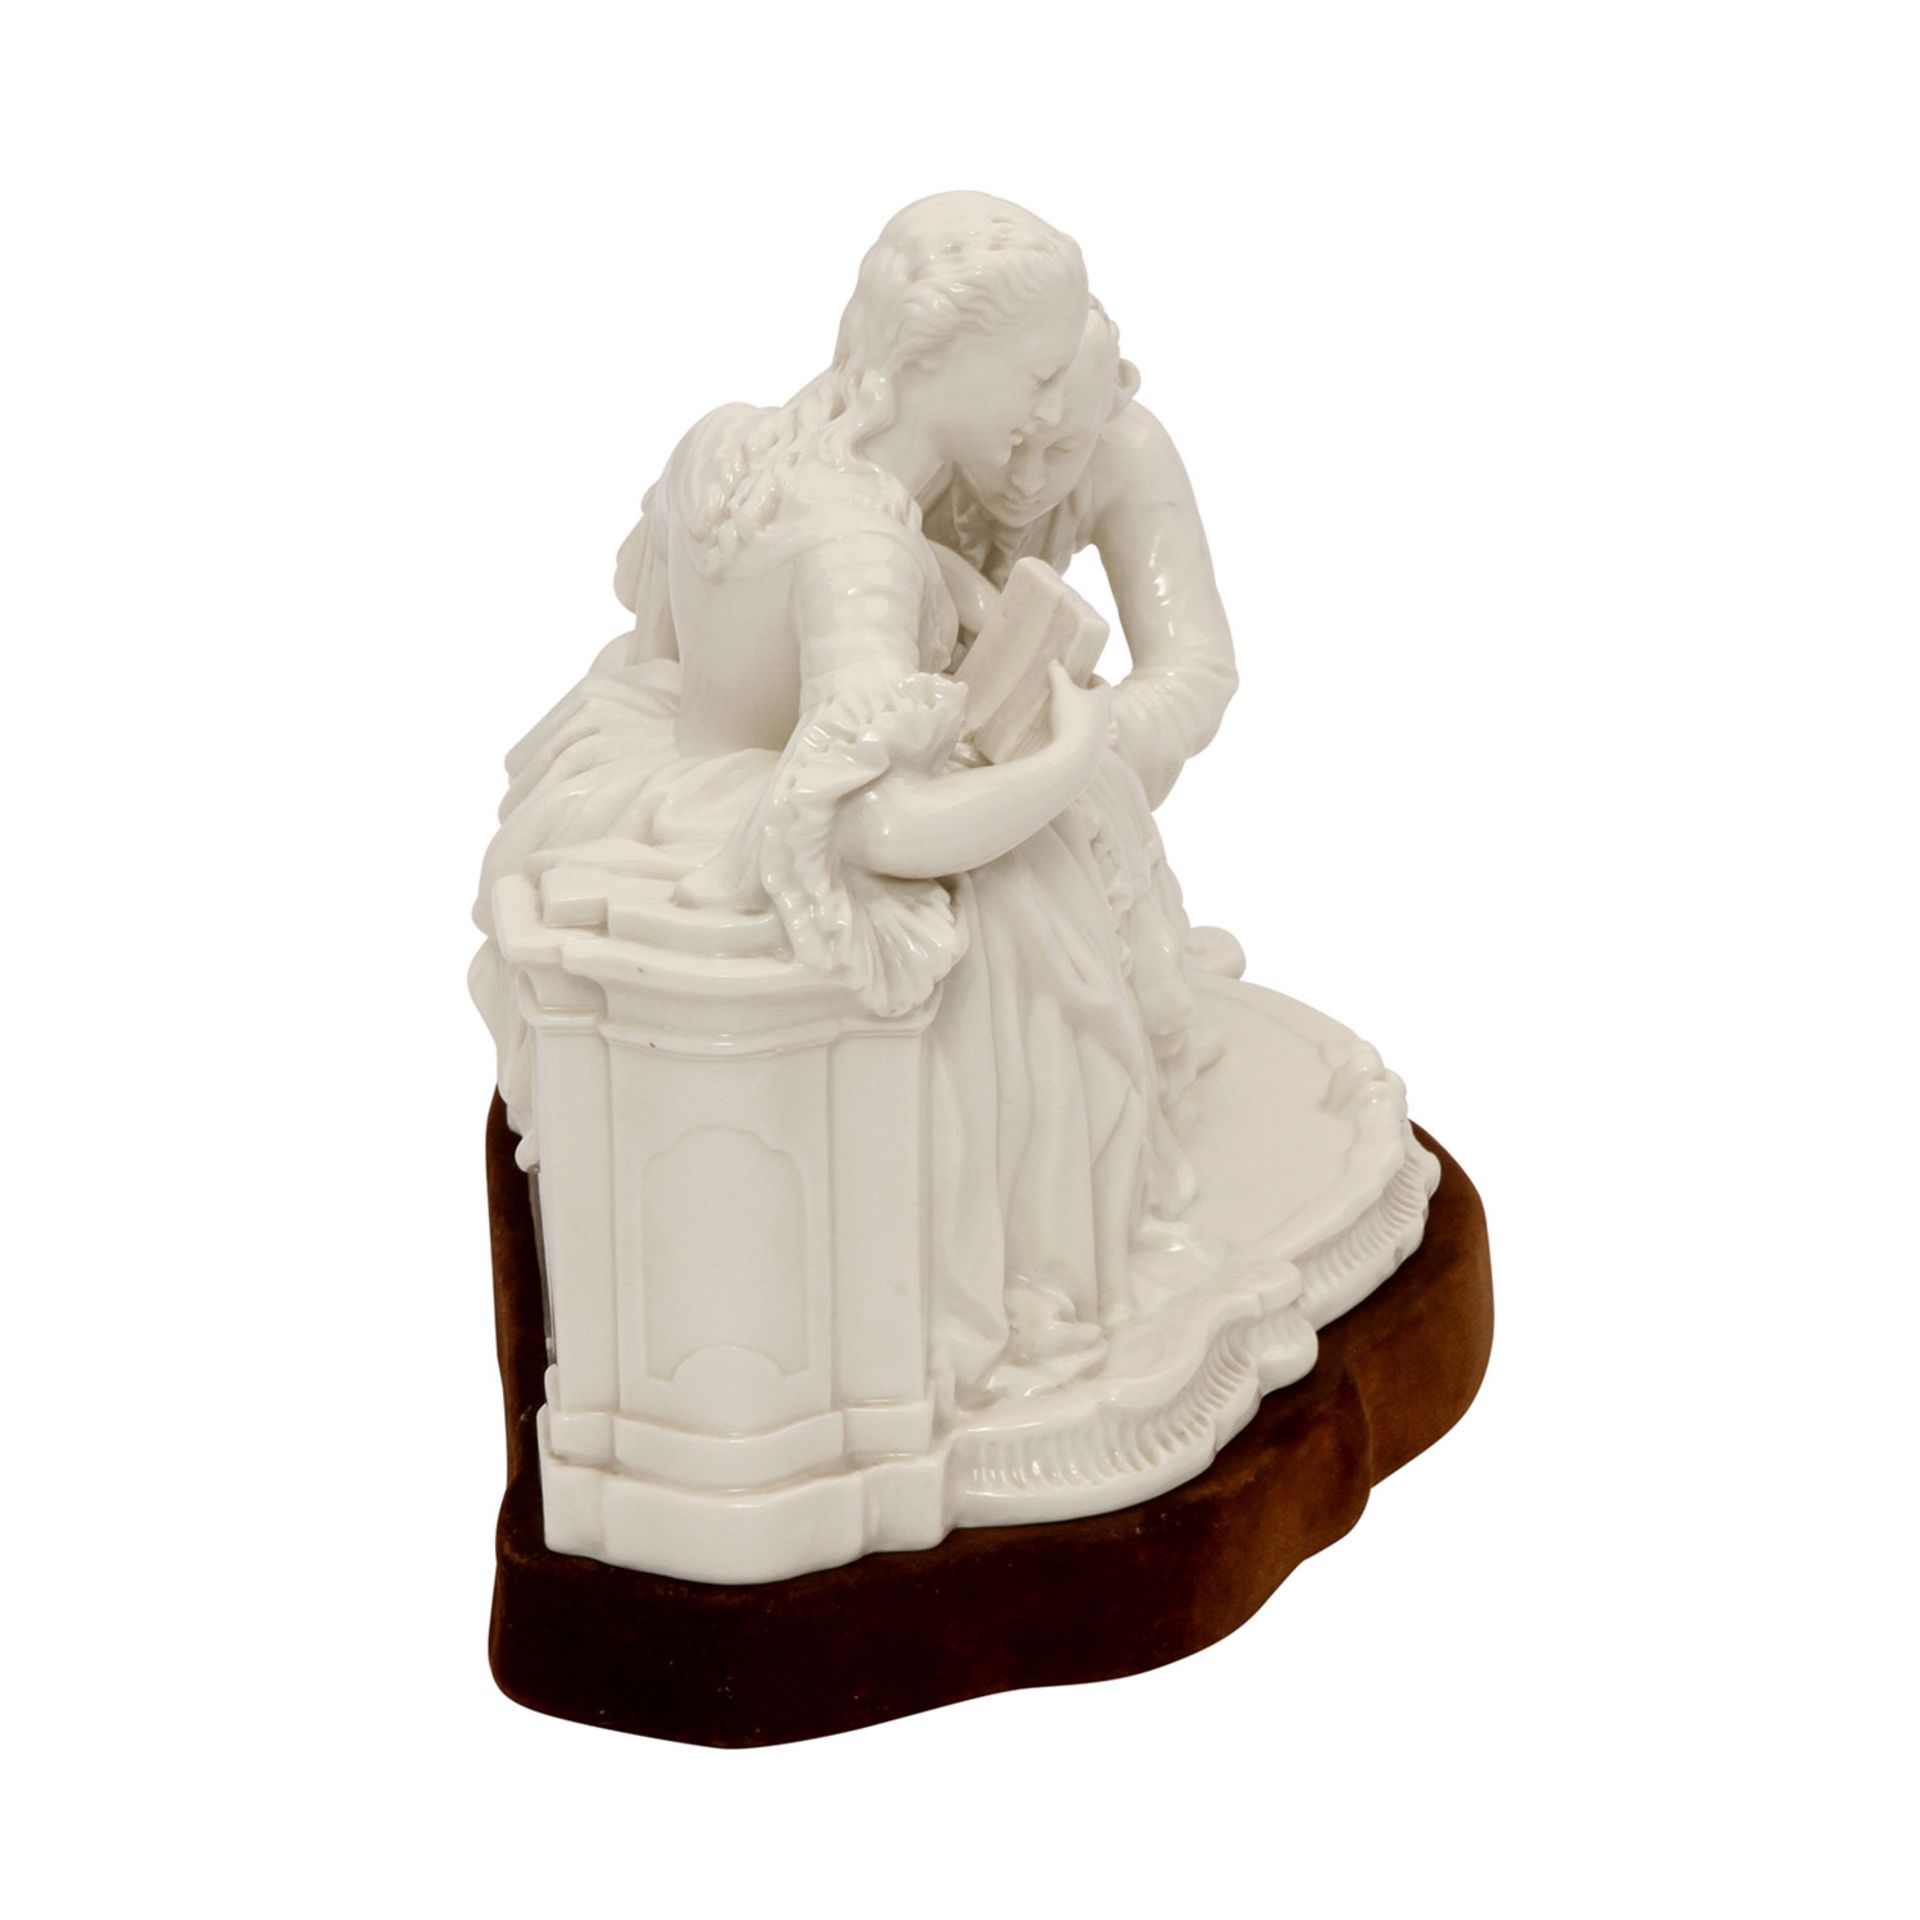 NYMPHENBURG Figurengruppe 'Der Handkuss', 20. Jhd. Weißporzellan, Rokokopaar, sitzende Dame in einem - Image 3 of 6